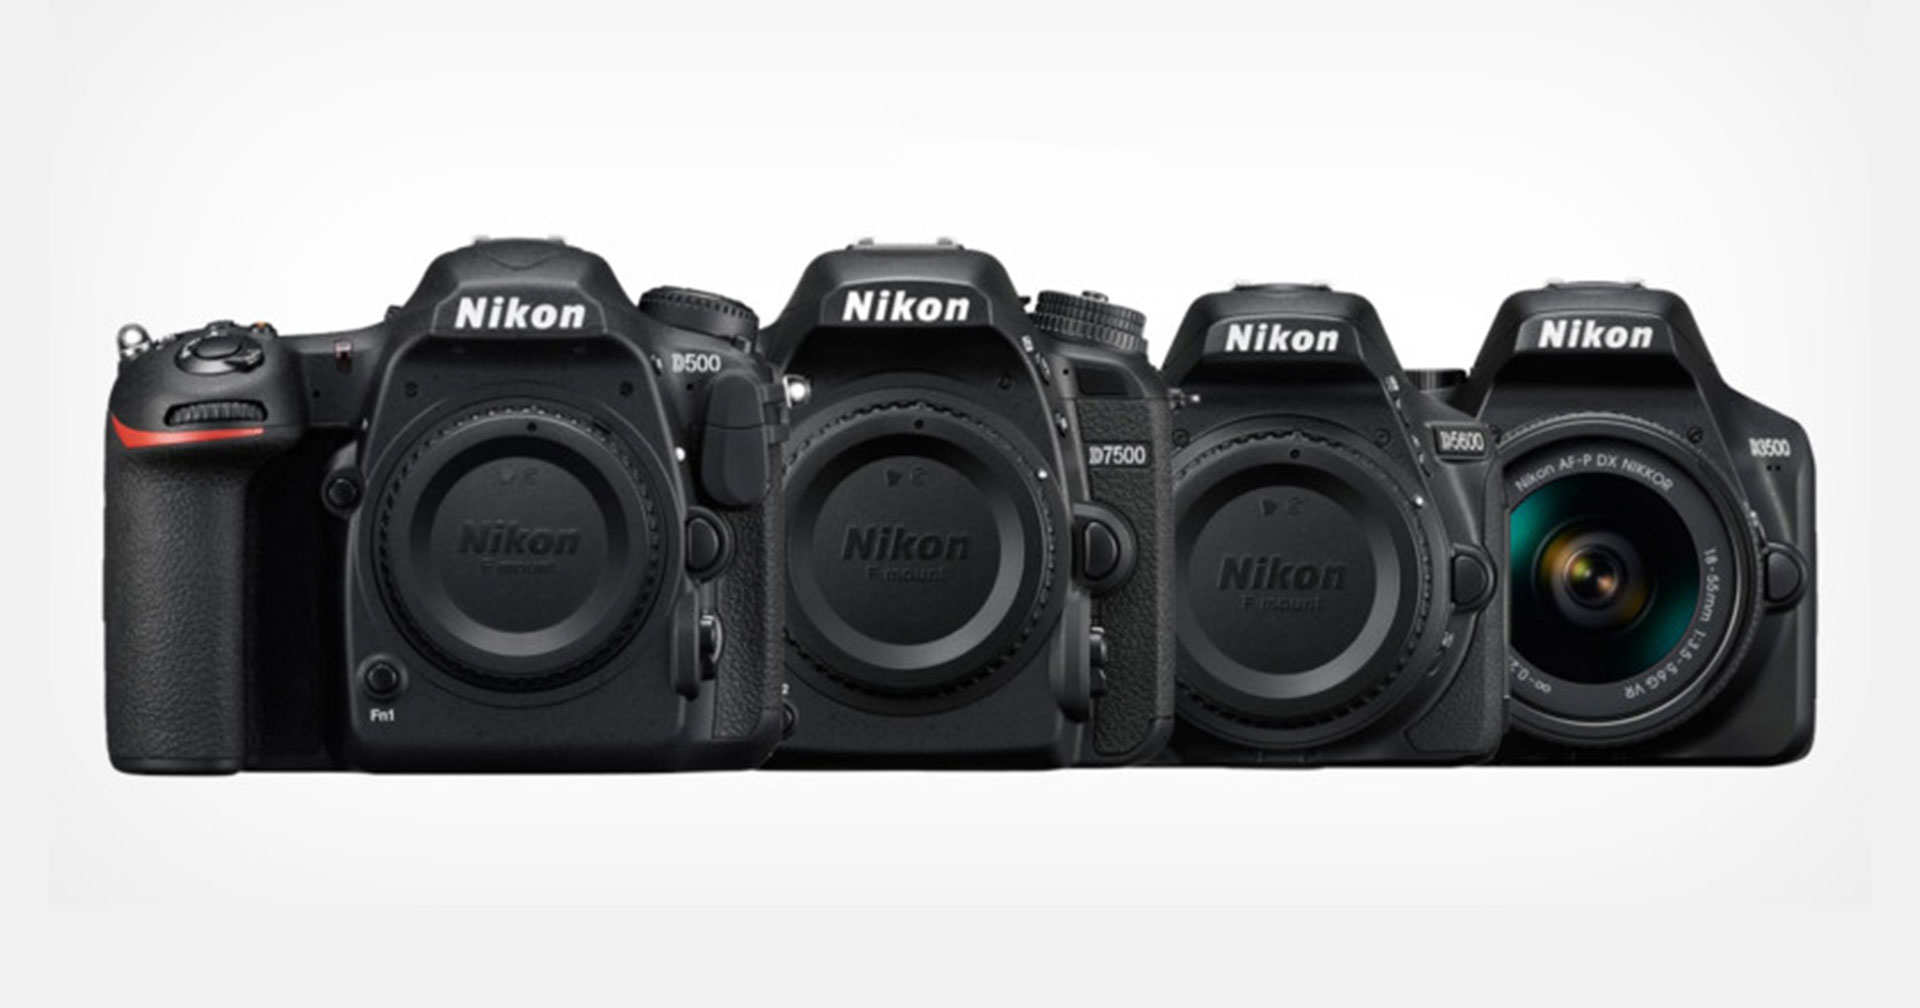 หรือกล้อง Nikon DSLR ฟอร์แมต DX และเลนส์อีกหลายรุ่นกำลัังจะหายไป จากเหตุขาดตลาดอย่างต่อเนื่อง